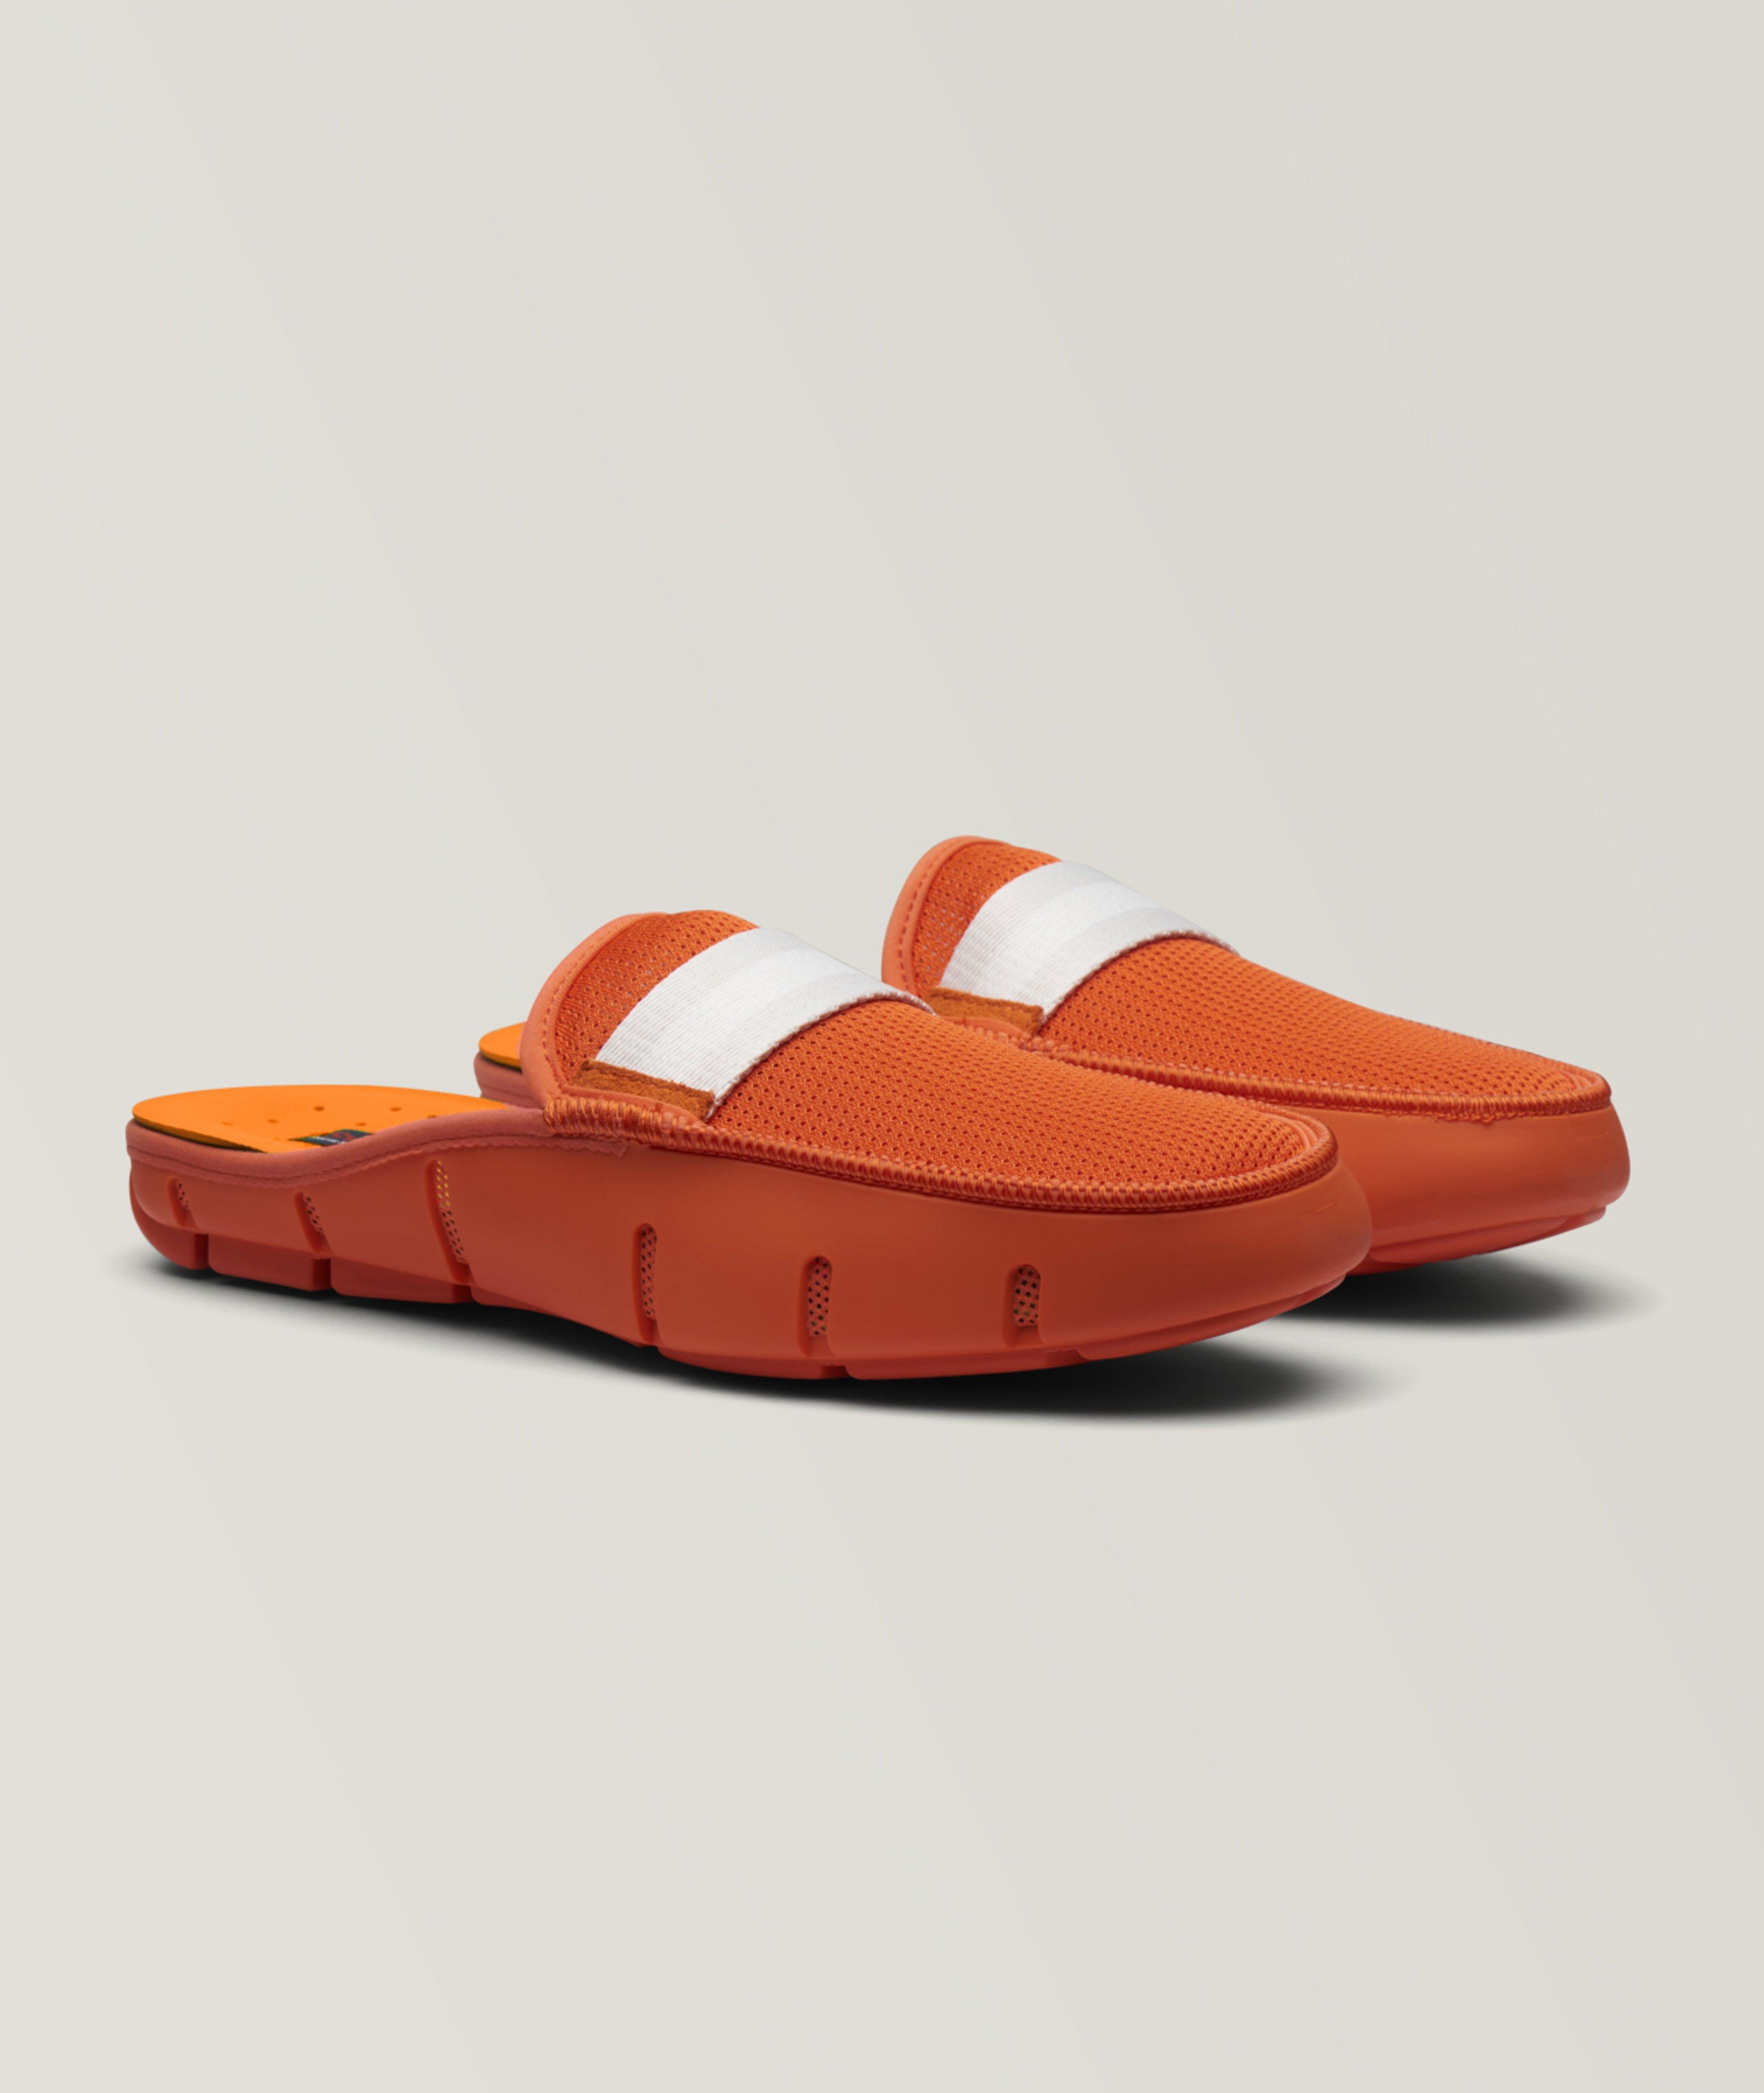 Slide Loafers image 0